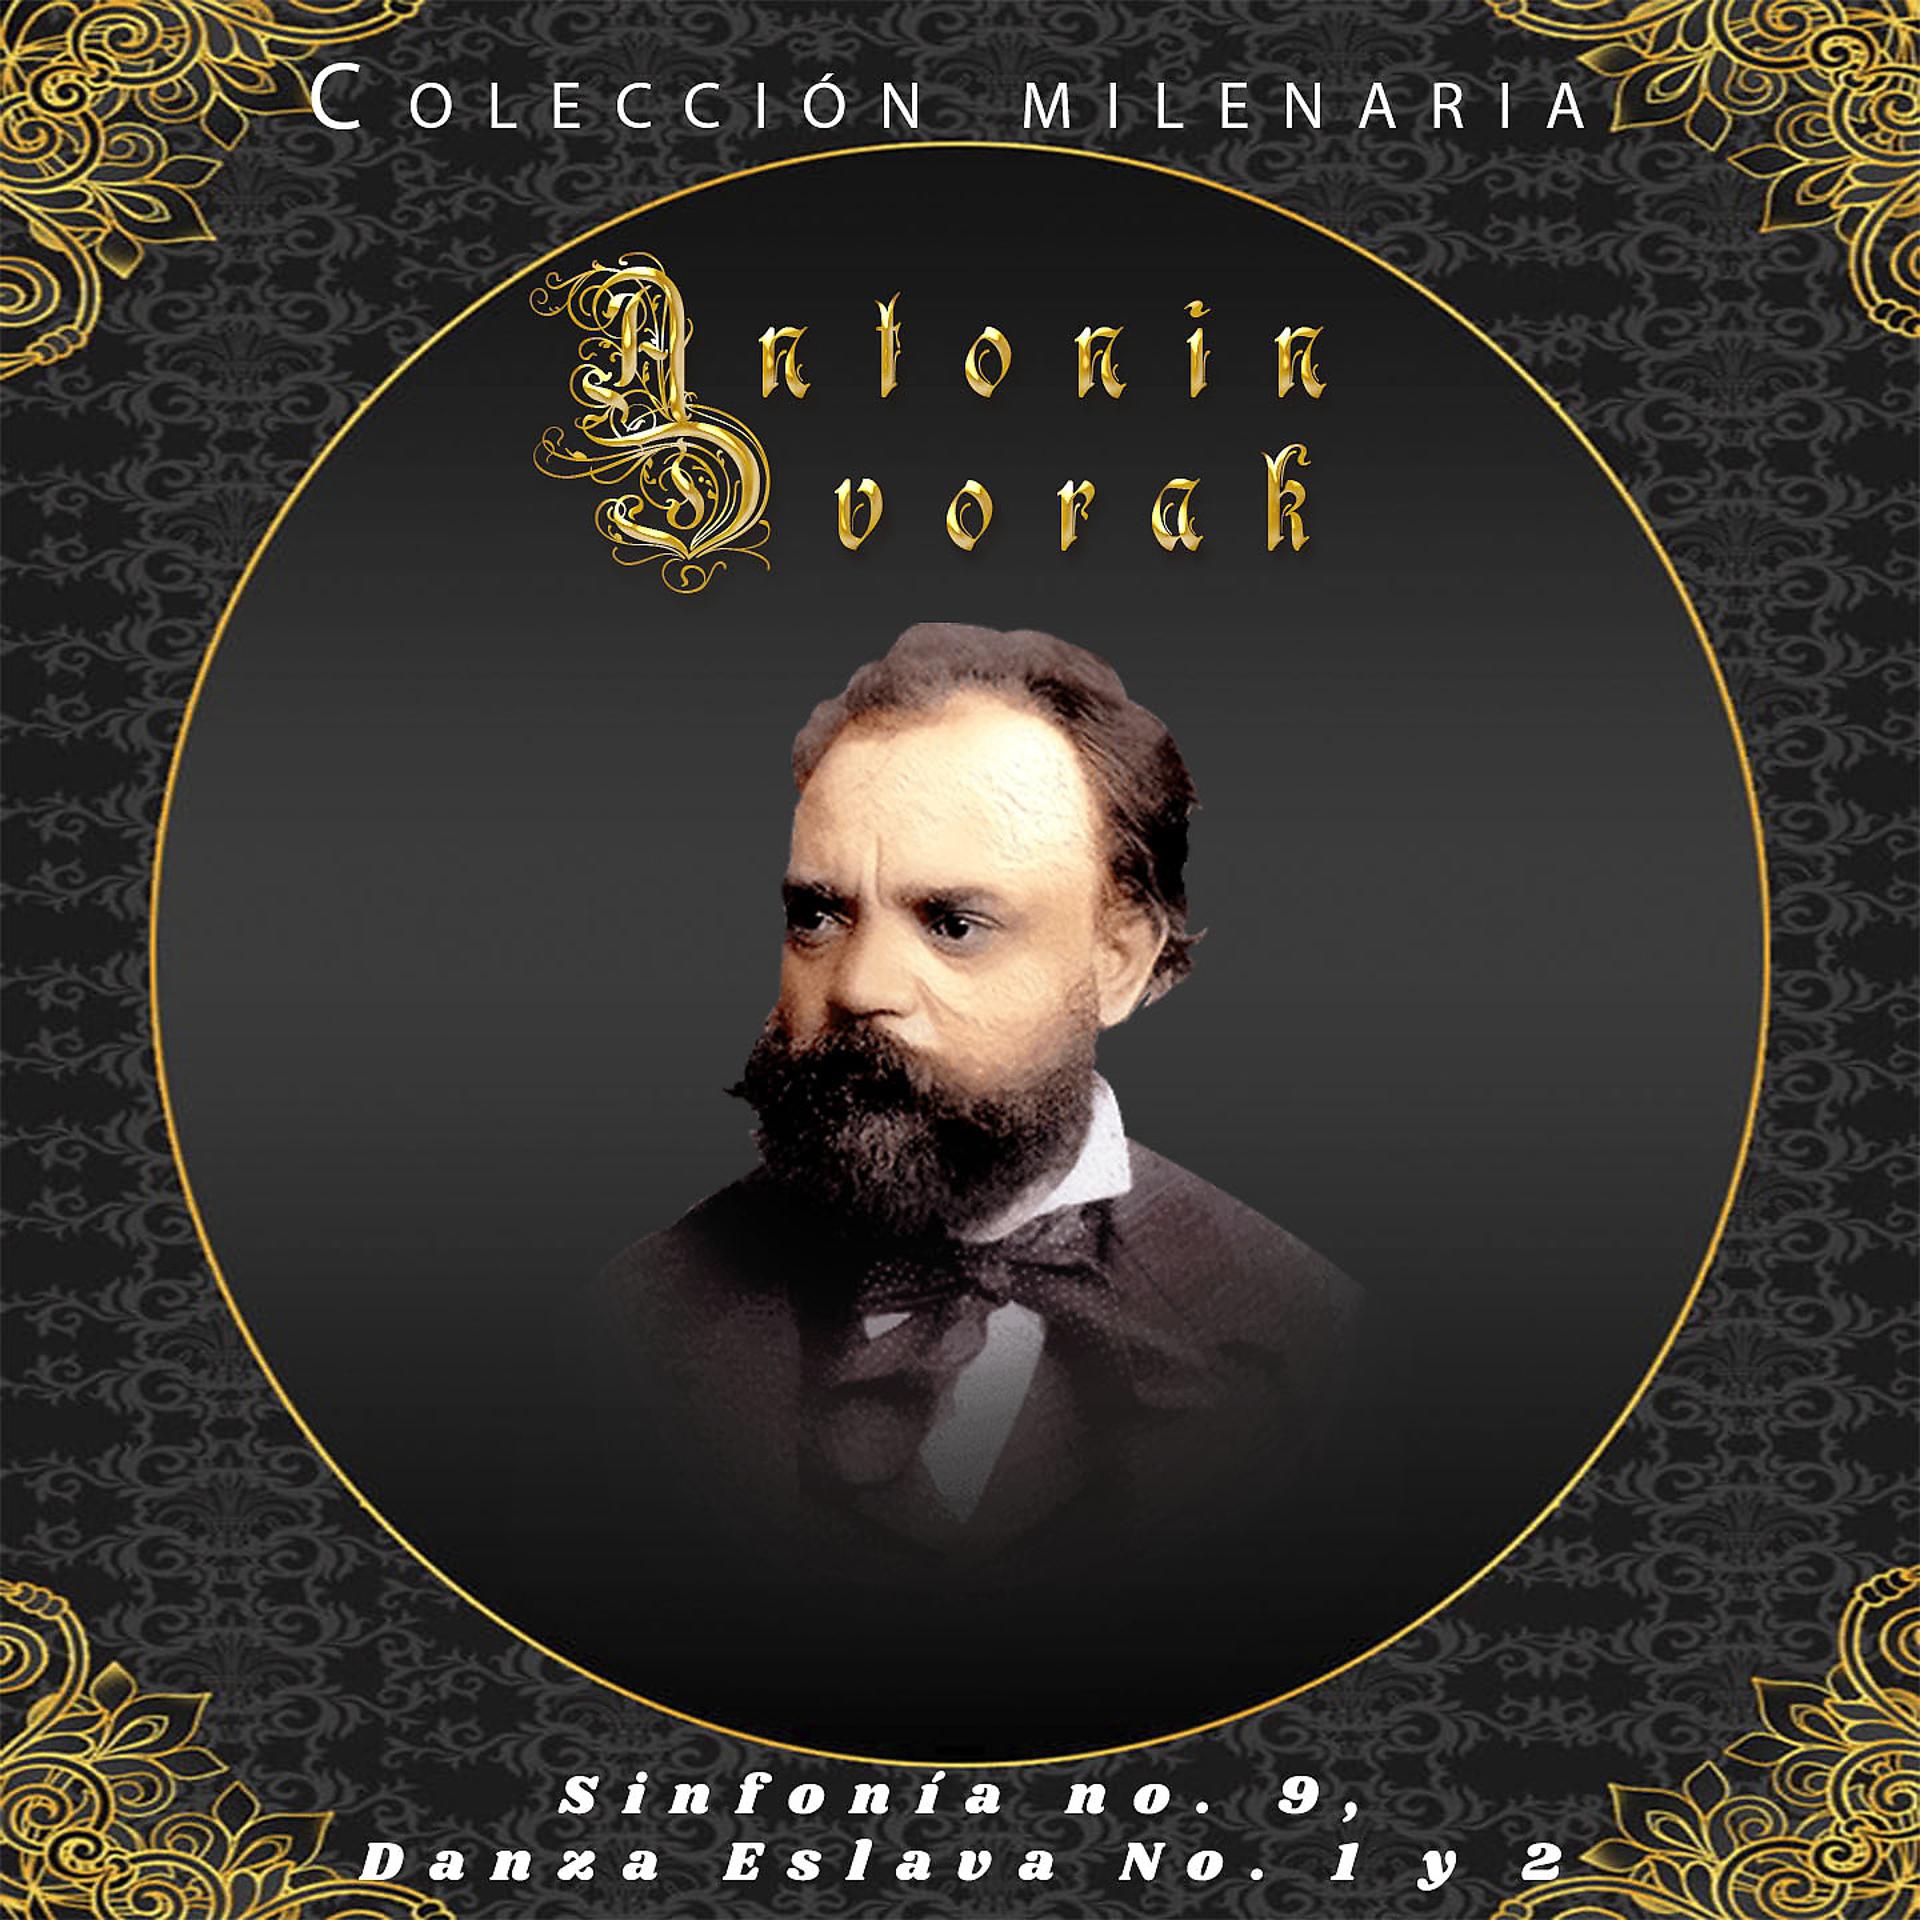 Постер альбома Colección Milenaria - Antonin Dvorak, Sinfonía No. 9, Danza Eslava No. 1 y 2